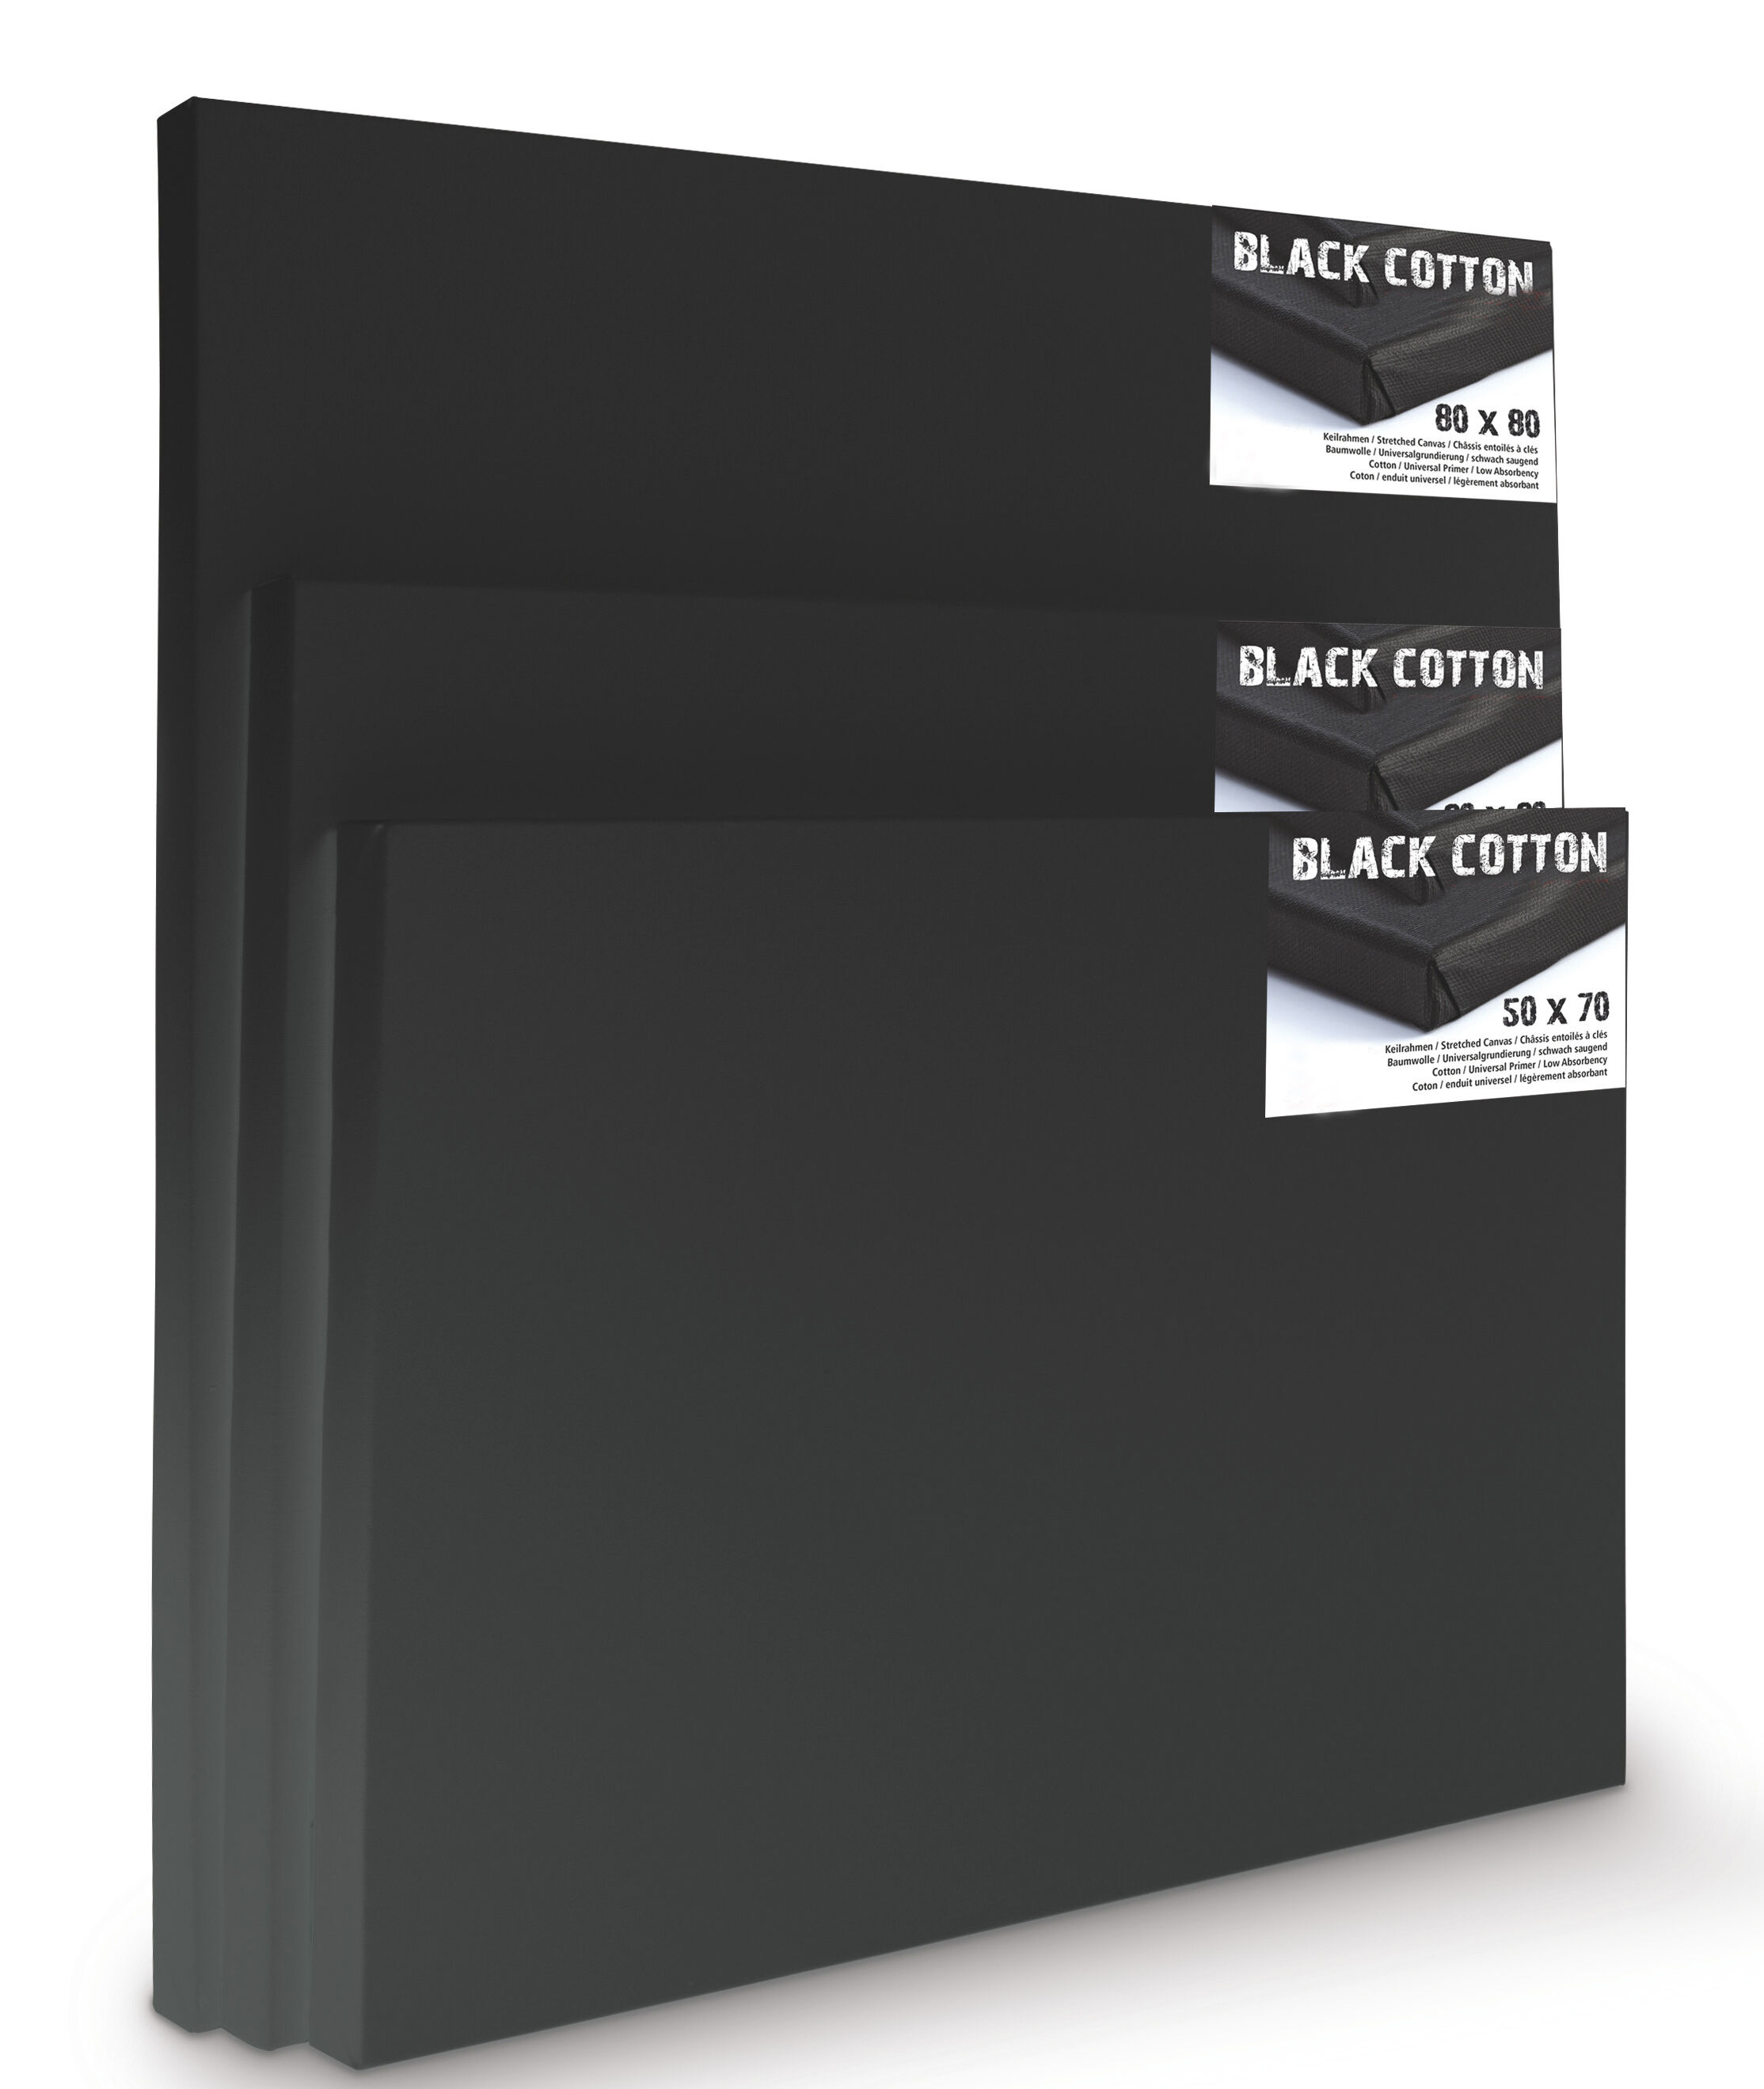 NEU Premium-Keilrahmen, schwarz grundiert, Vernissage 45mm Leistenstärke, 100x100cm - 1 Stück